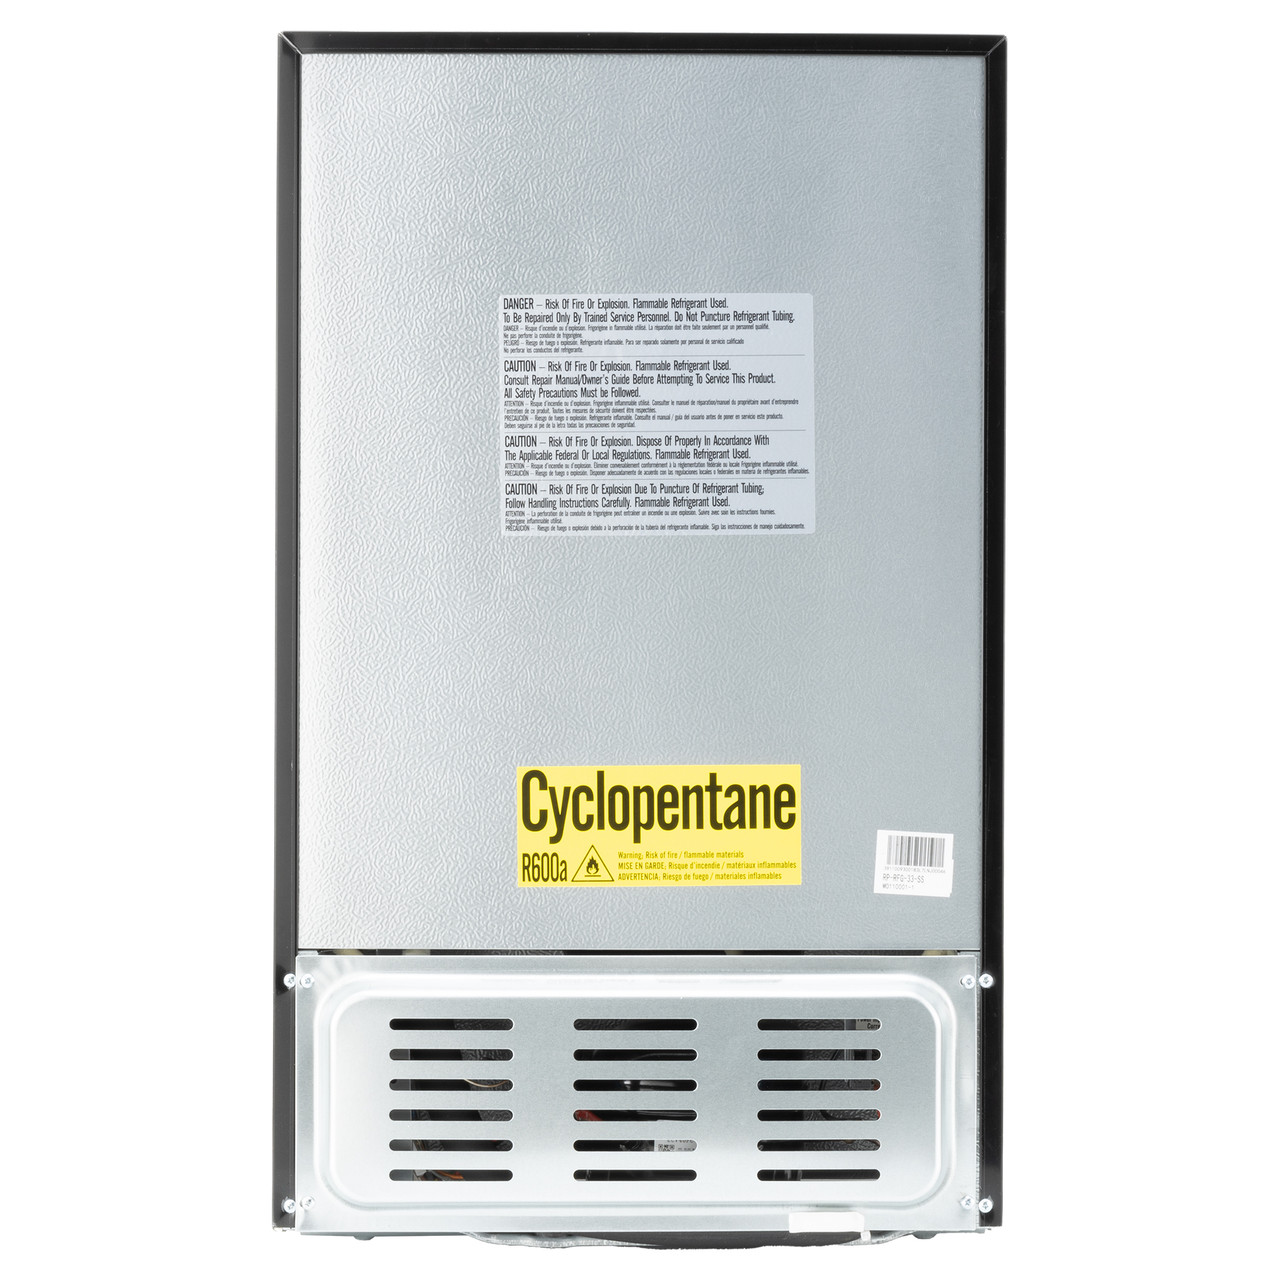 R600a case of 12  Best Refrigerant.com